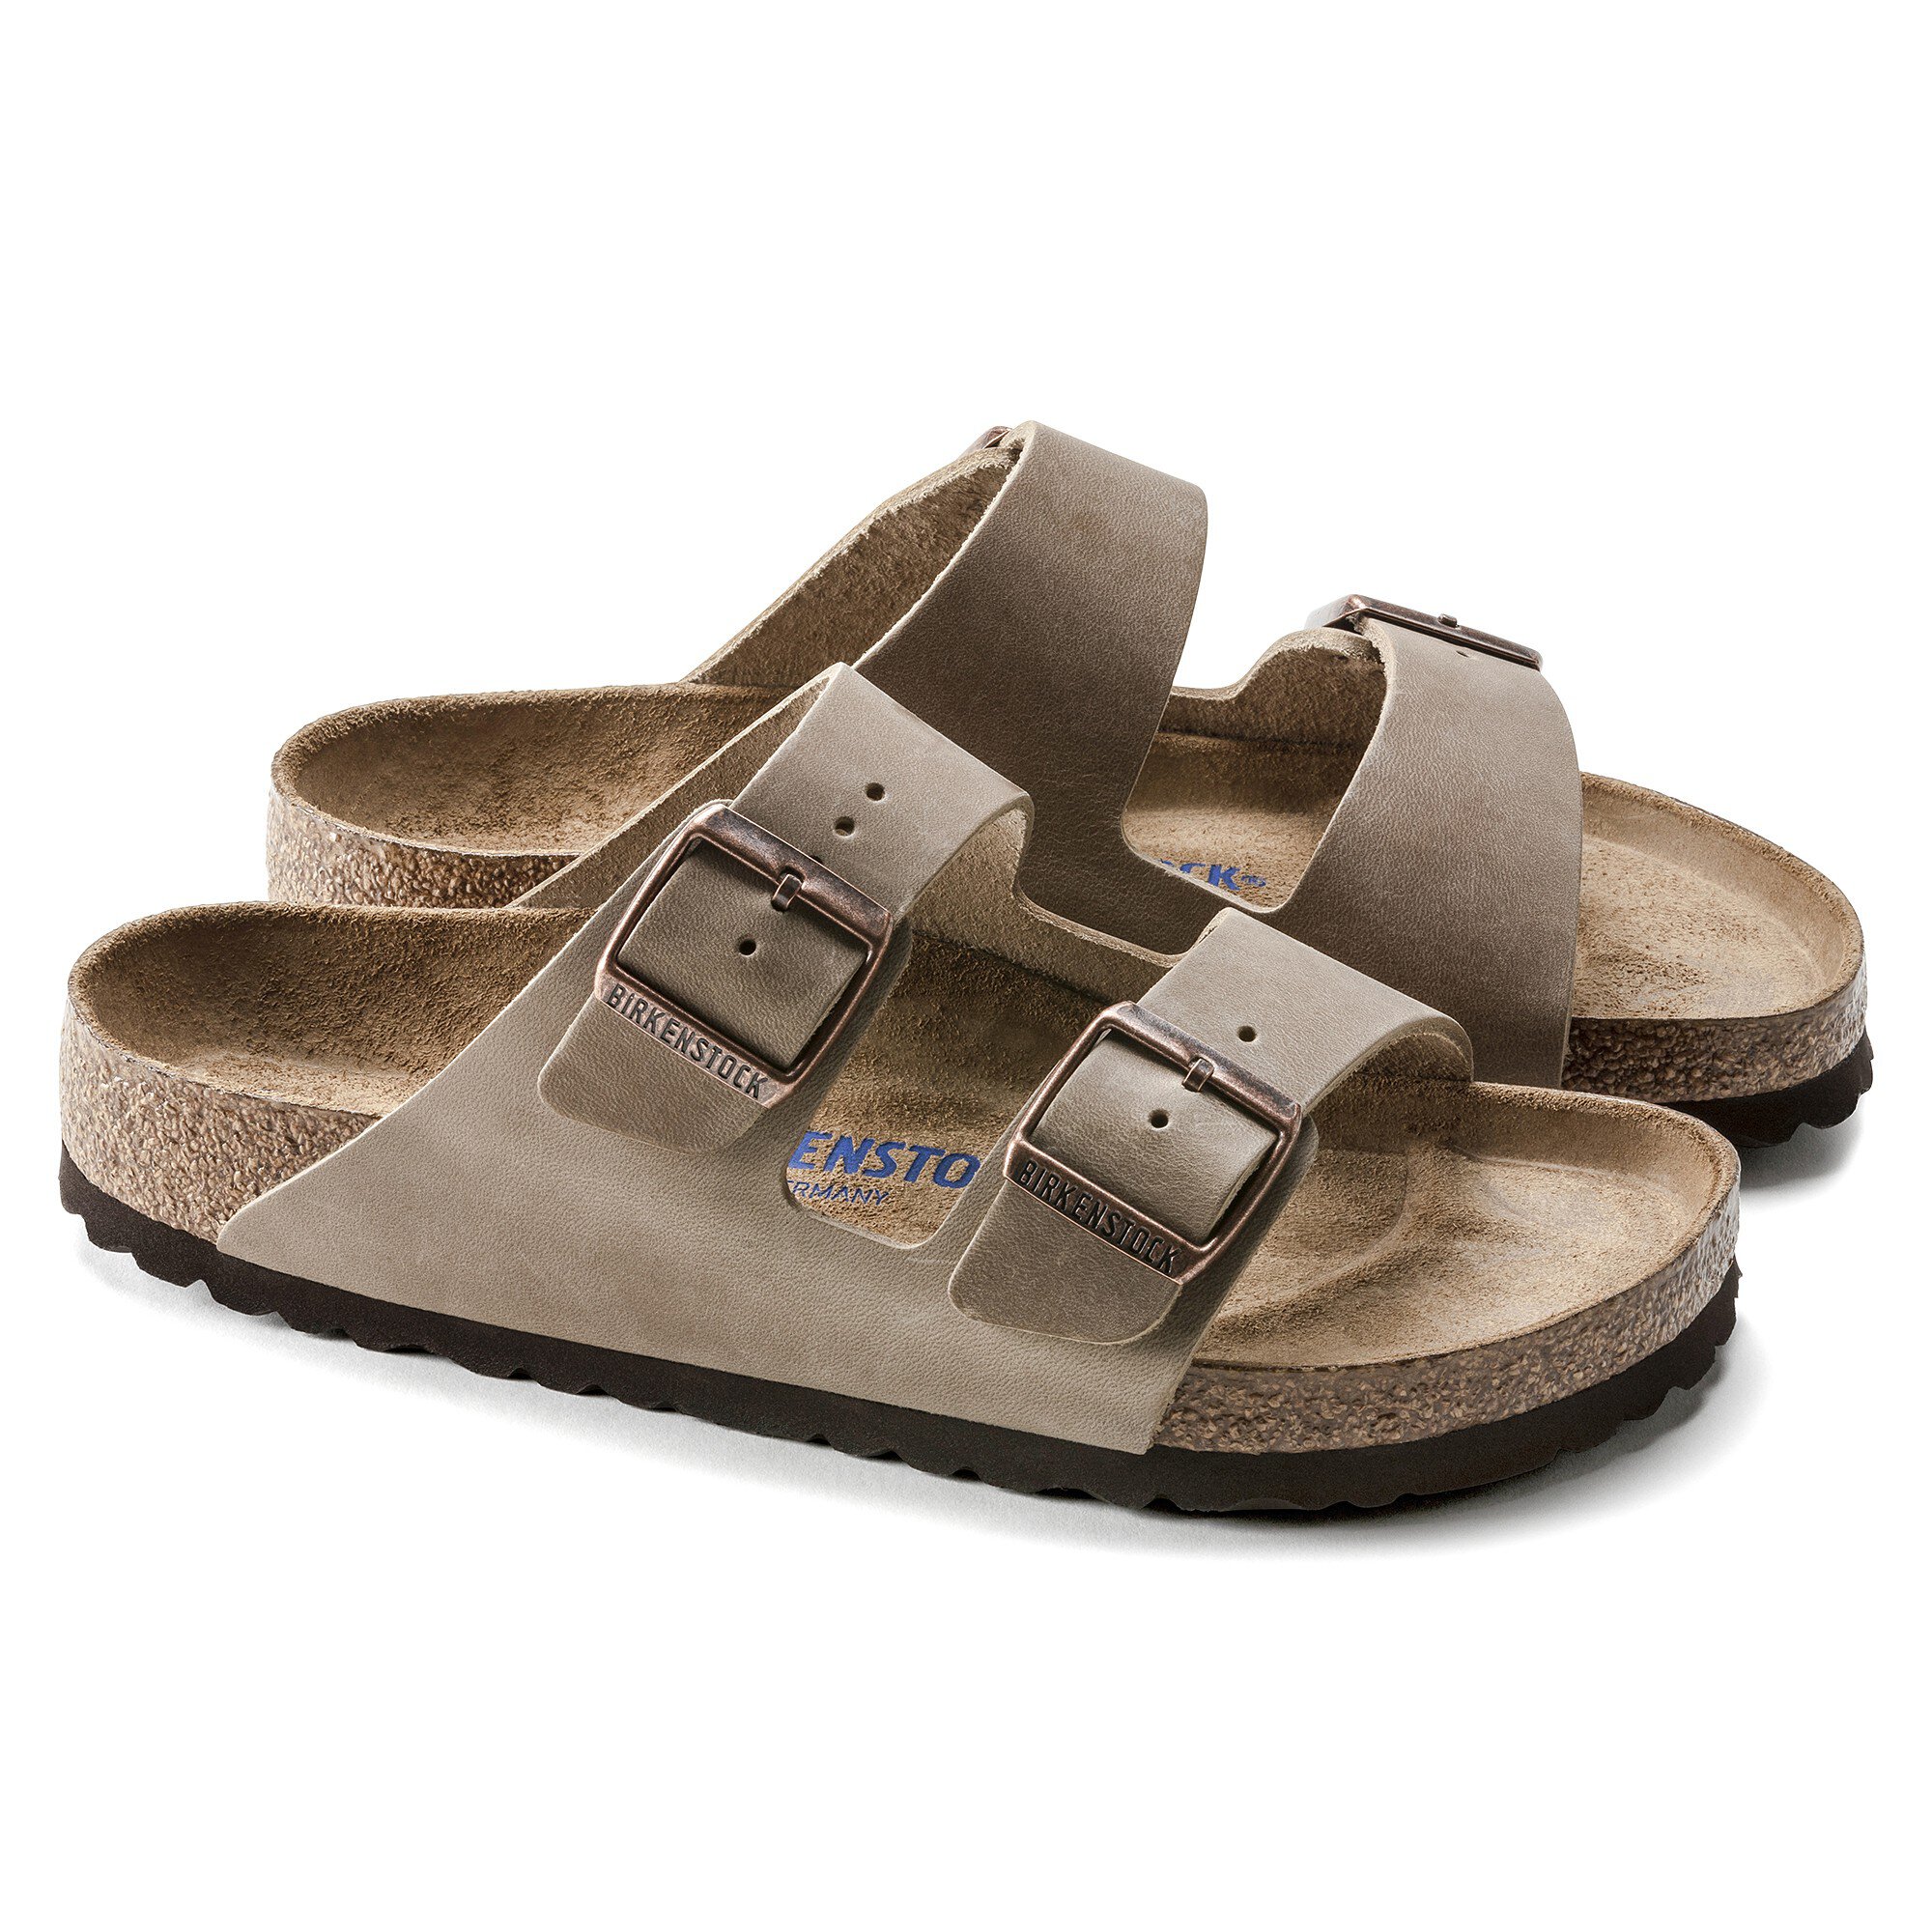 birkenstock arizona brown leather sandals